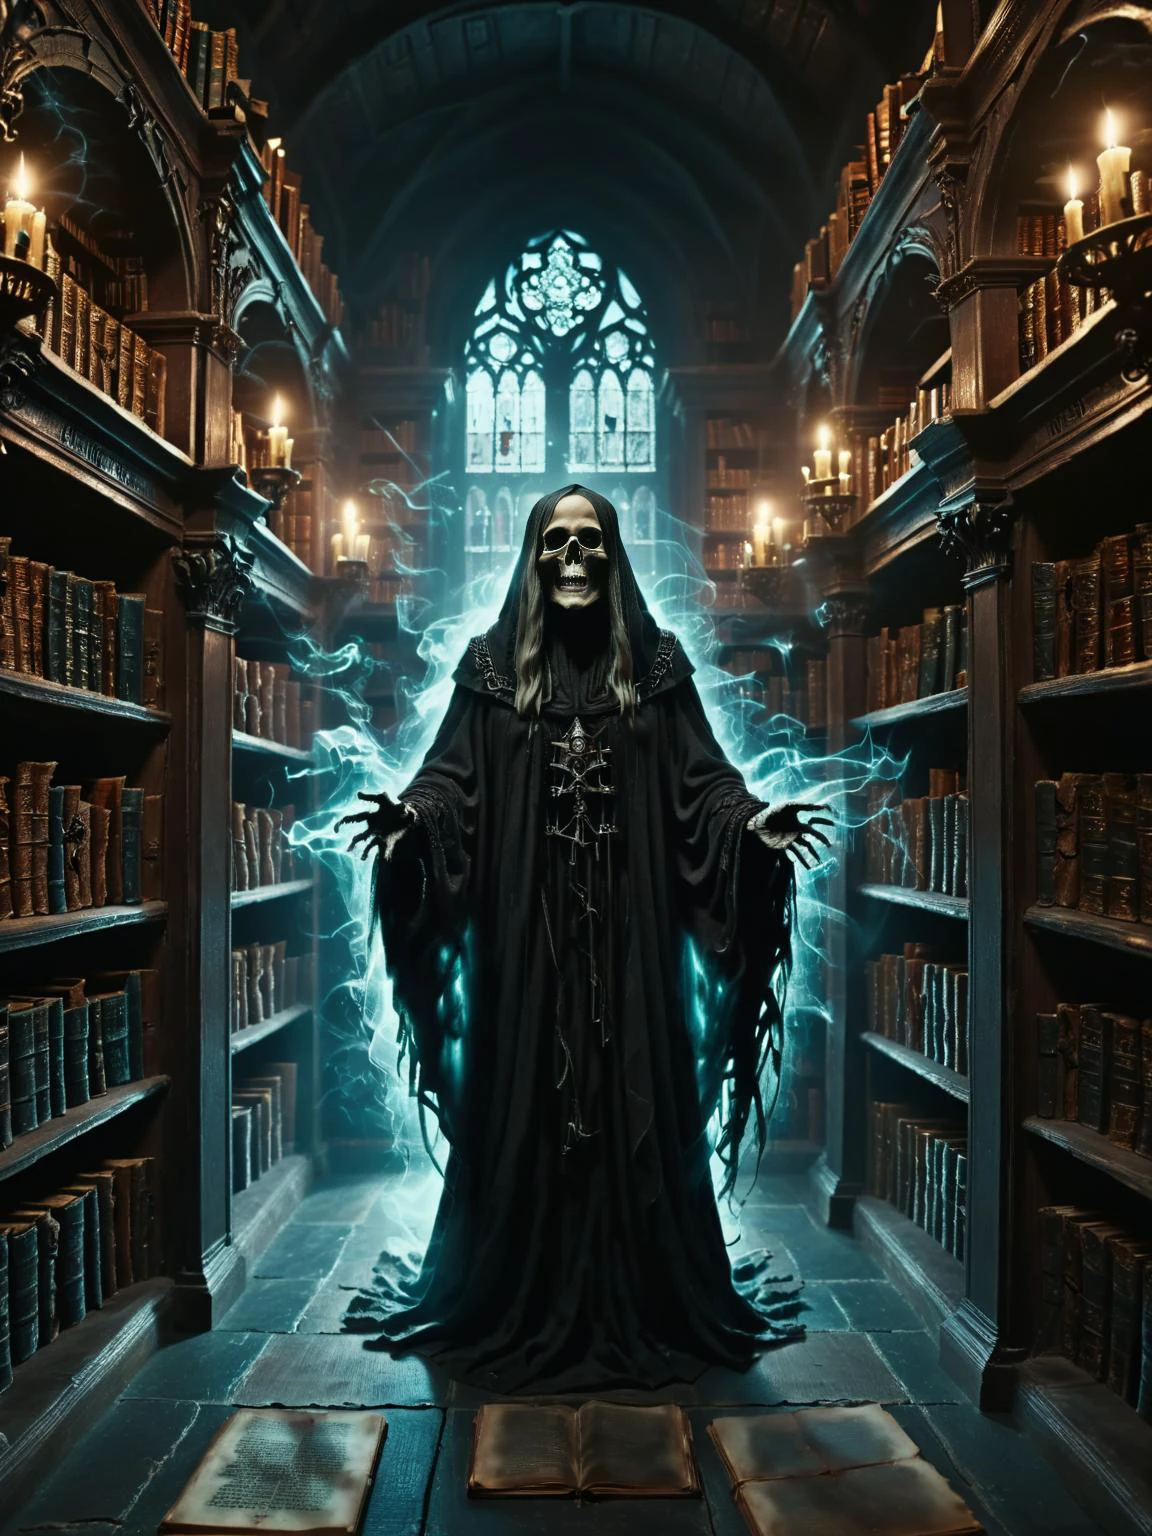 다크 판타지, 유령스타일,네크로맨서의 어두컴컴한 도서관, 고대의 선반이 있는, 금지된 책, 어둠의 마법으로 빛나는, 그리고 더미 사이에 숨어있는 그림자 같은 인물들, 시네마틱, 뒤얽힌, 매우 상세한, 8K, UHD,